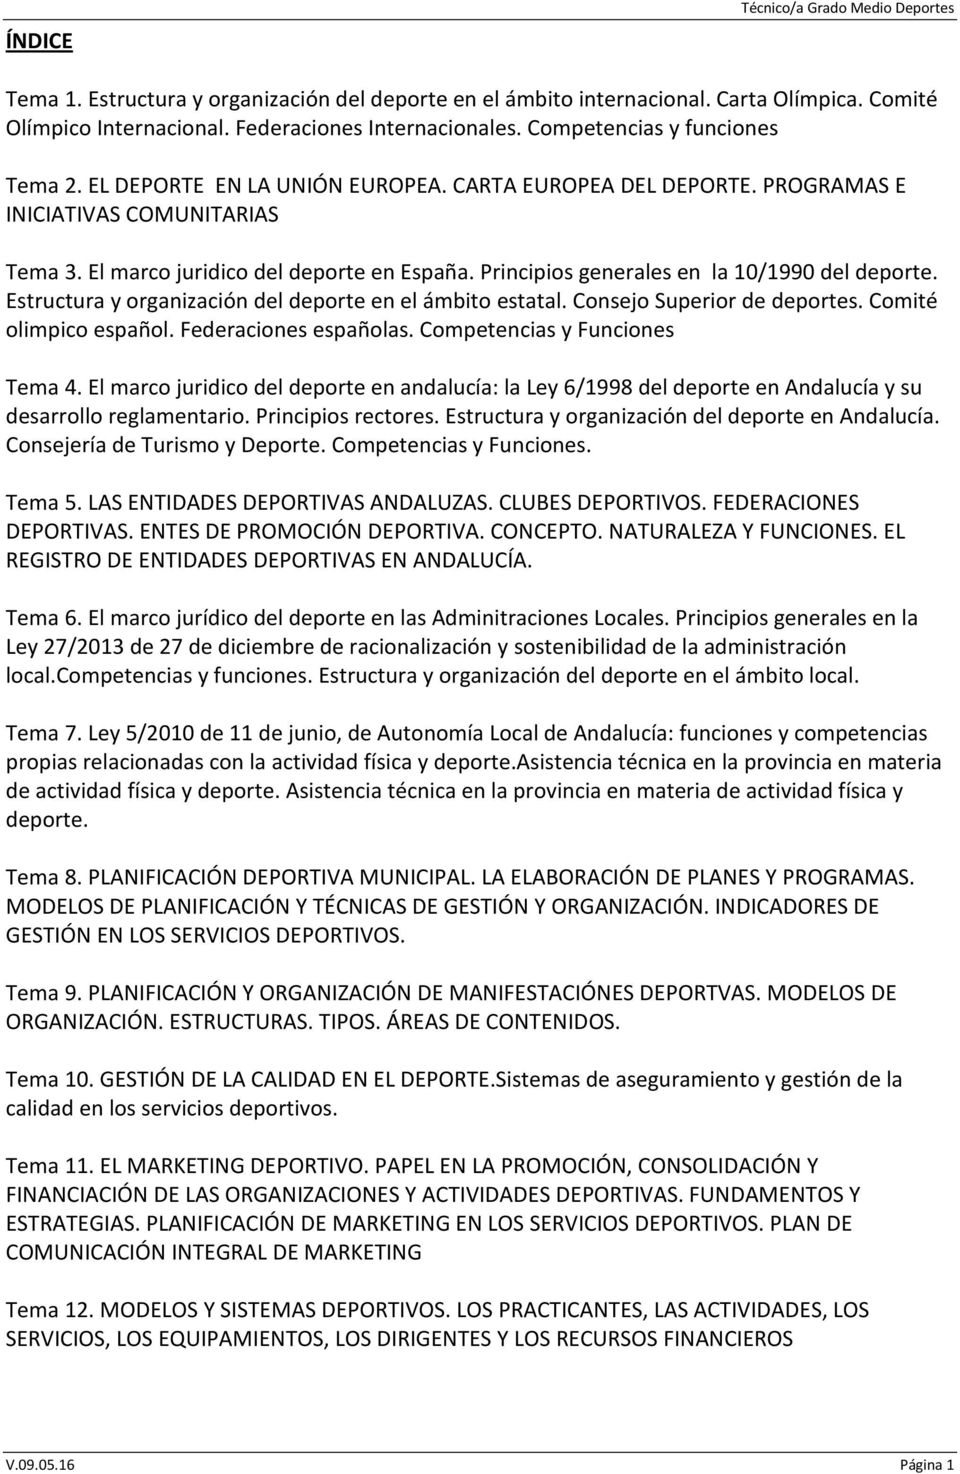 Principios generales en la 10/1990 del deporte. Estructura y organización del deporte en el ámbito estatal. Consejo Superior de deportes. Comité olimpico español. Federaciones españolas.